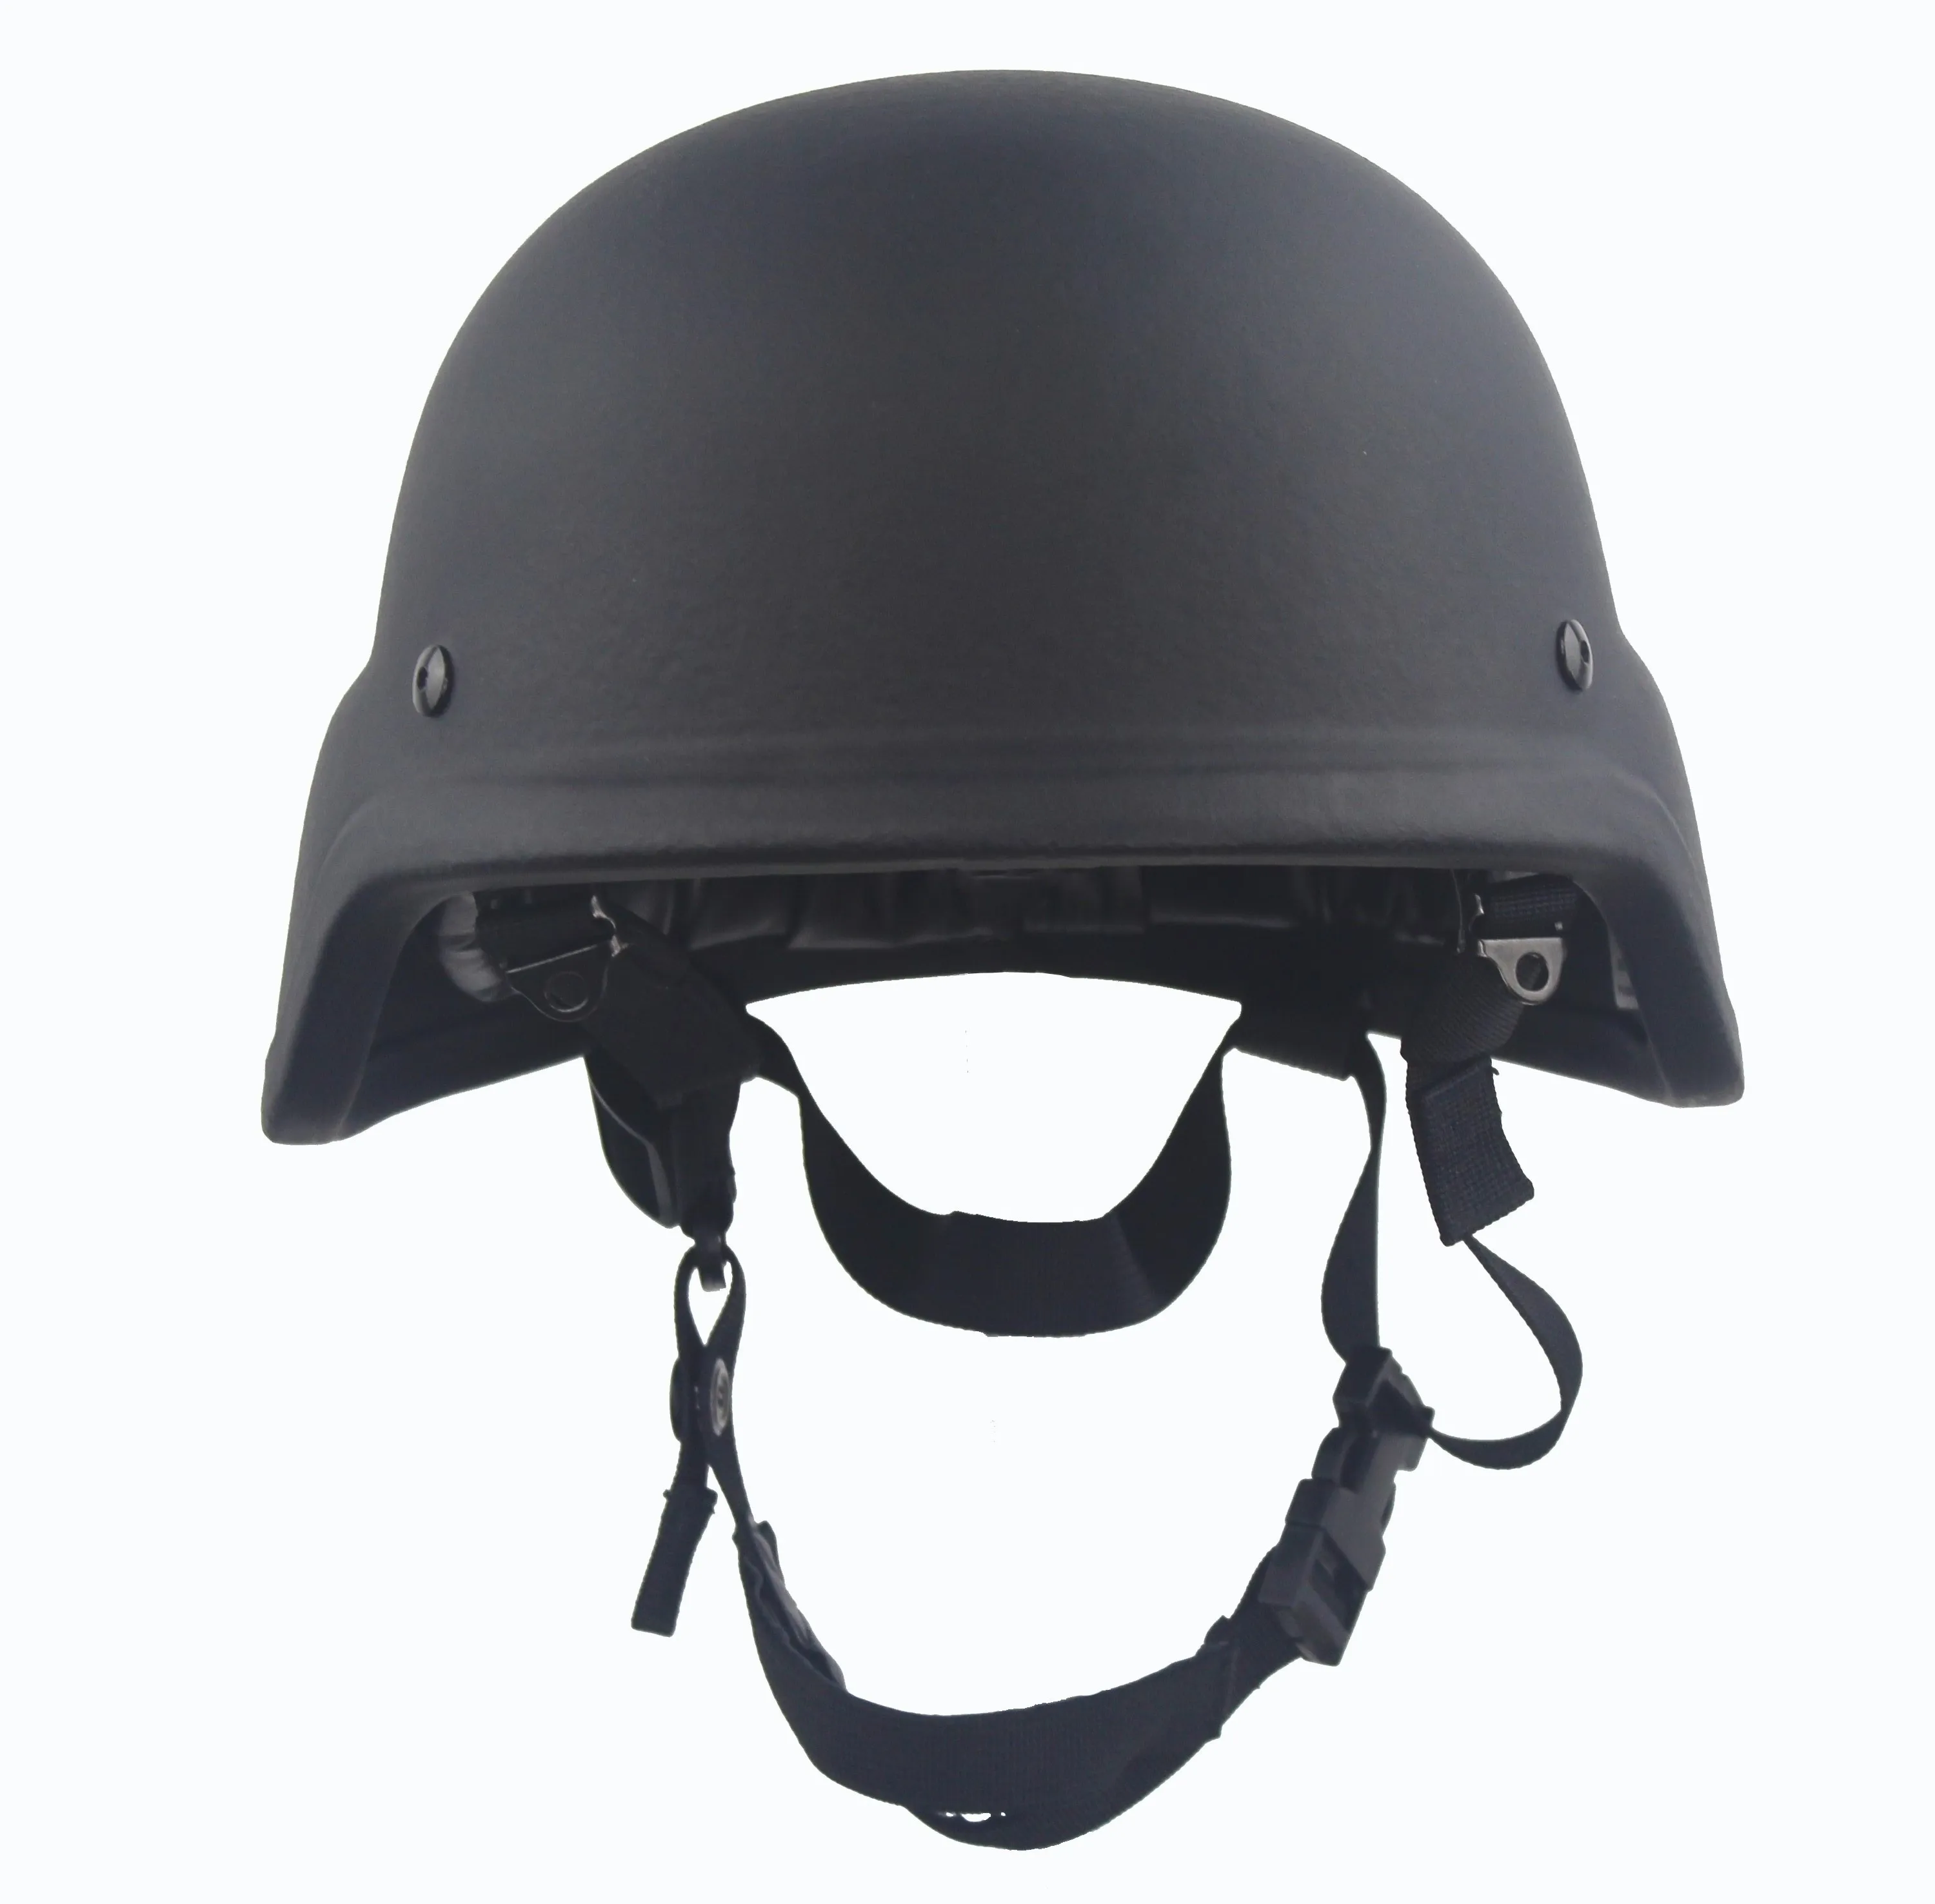 防弹头盔 - buy 防弹头盔,防弹头盔,军用头盔 product on alibaba.com